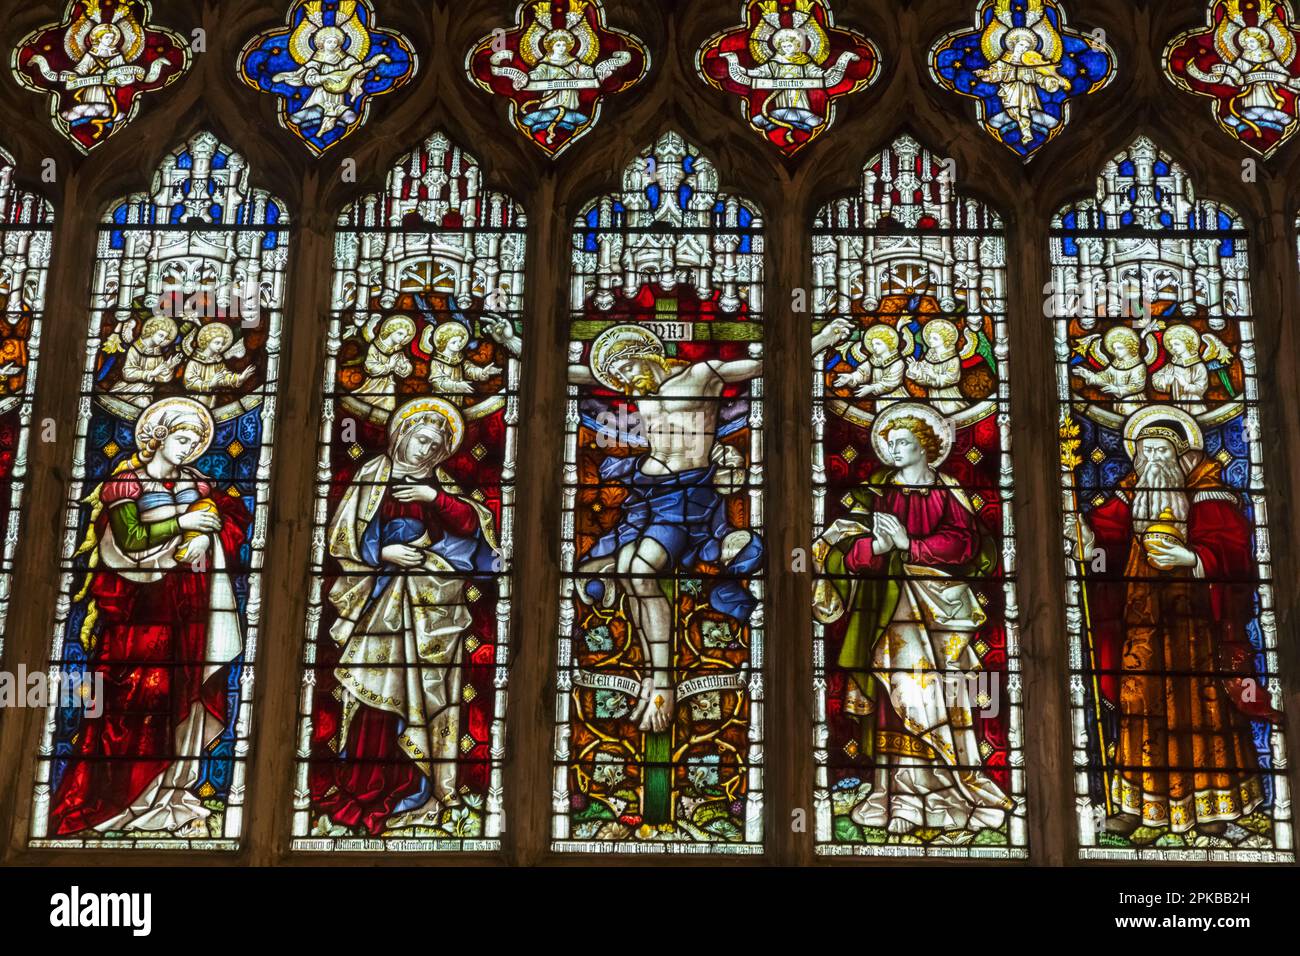 Angleterre, Dorset, Wareham, Église Lady St.Mary, vitraux représentant des scènes bibliques Banque D'Images